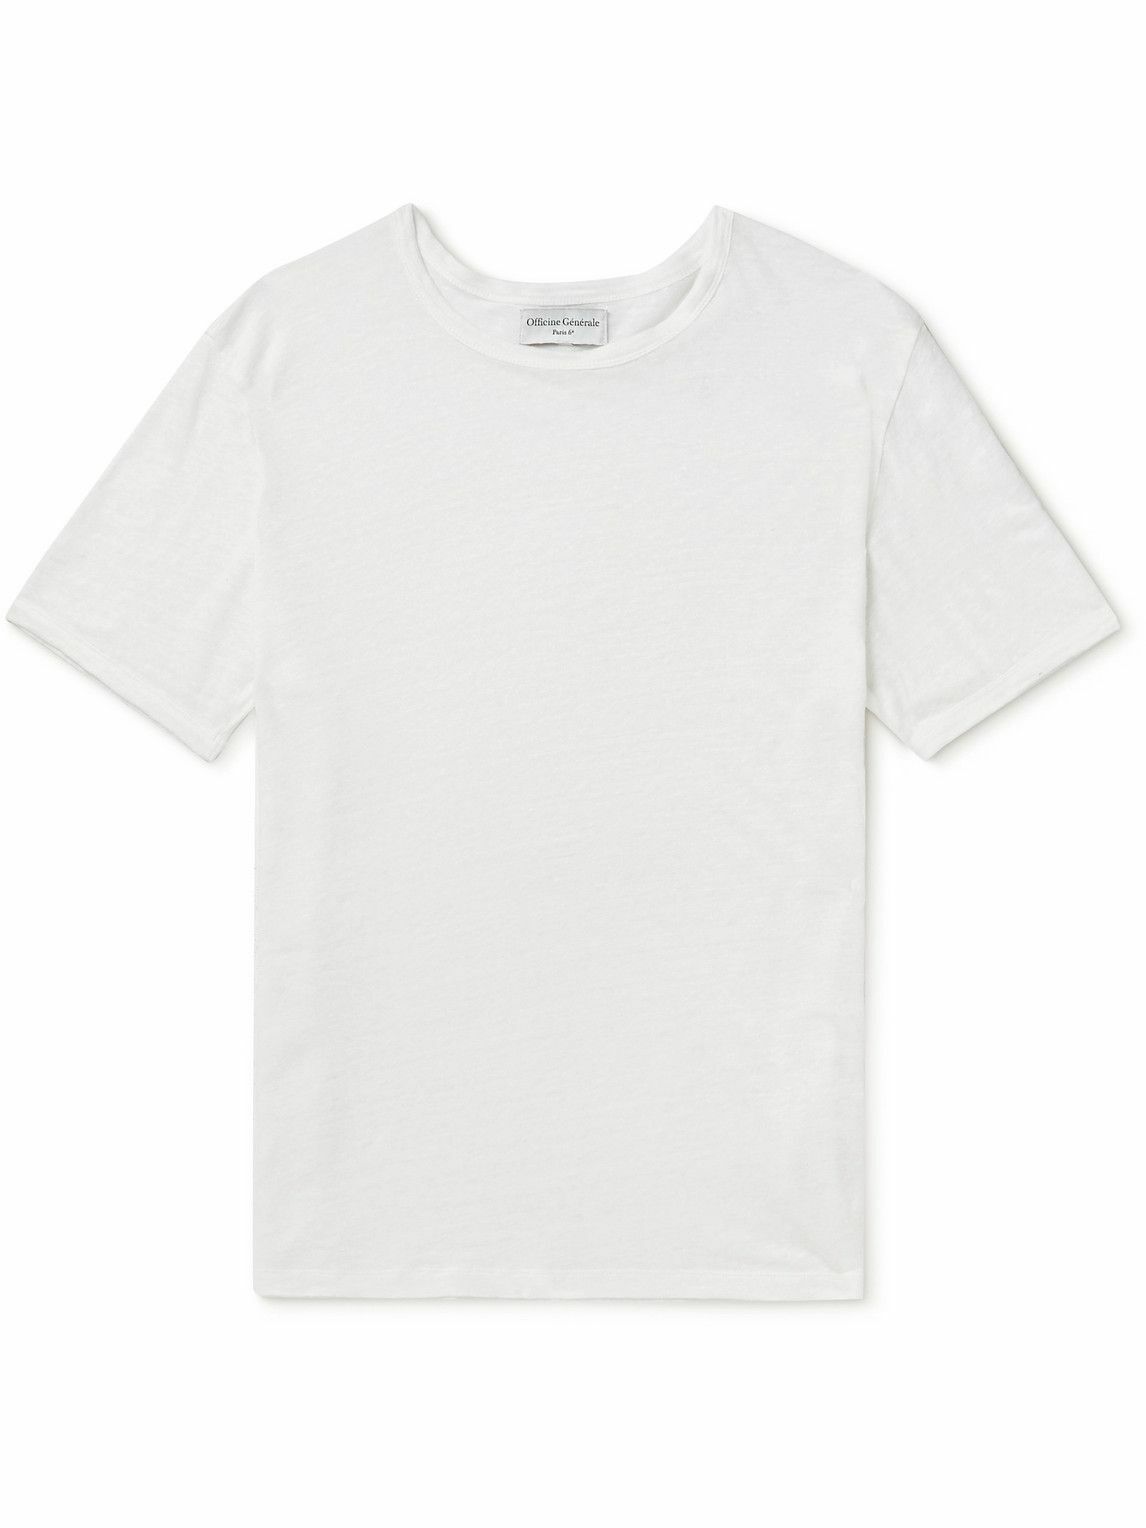 Officine Générale - Stretch-Linen T-Shirt - White Officine Generale